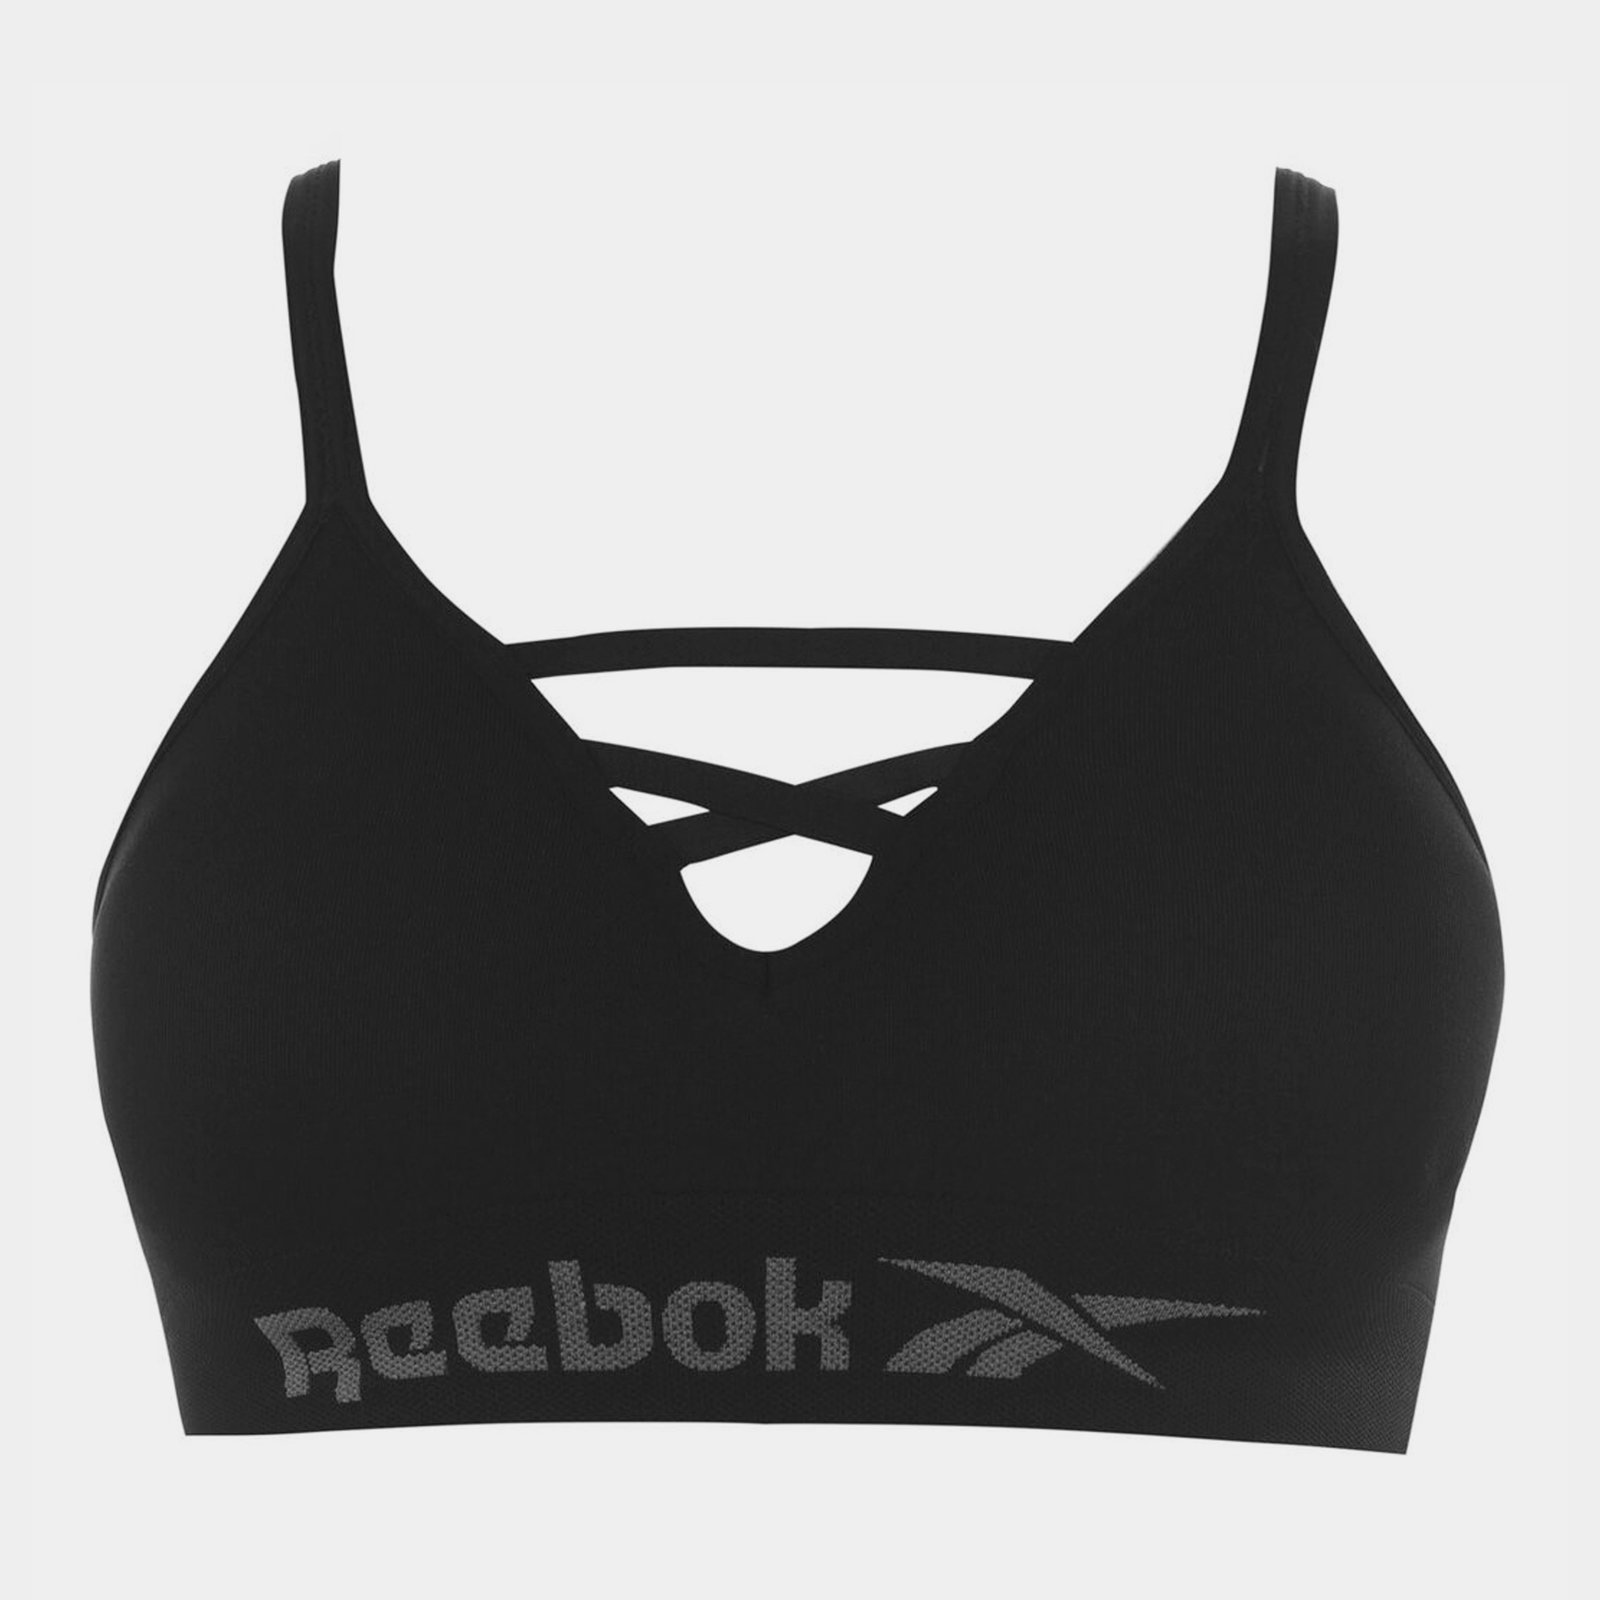 Everlast Womens Size 12 Black / White sports bra(s)